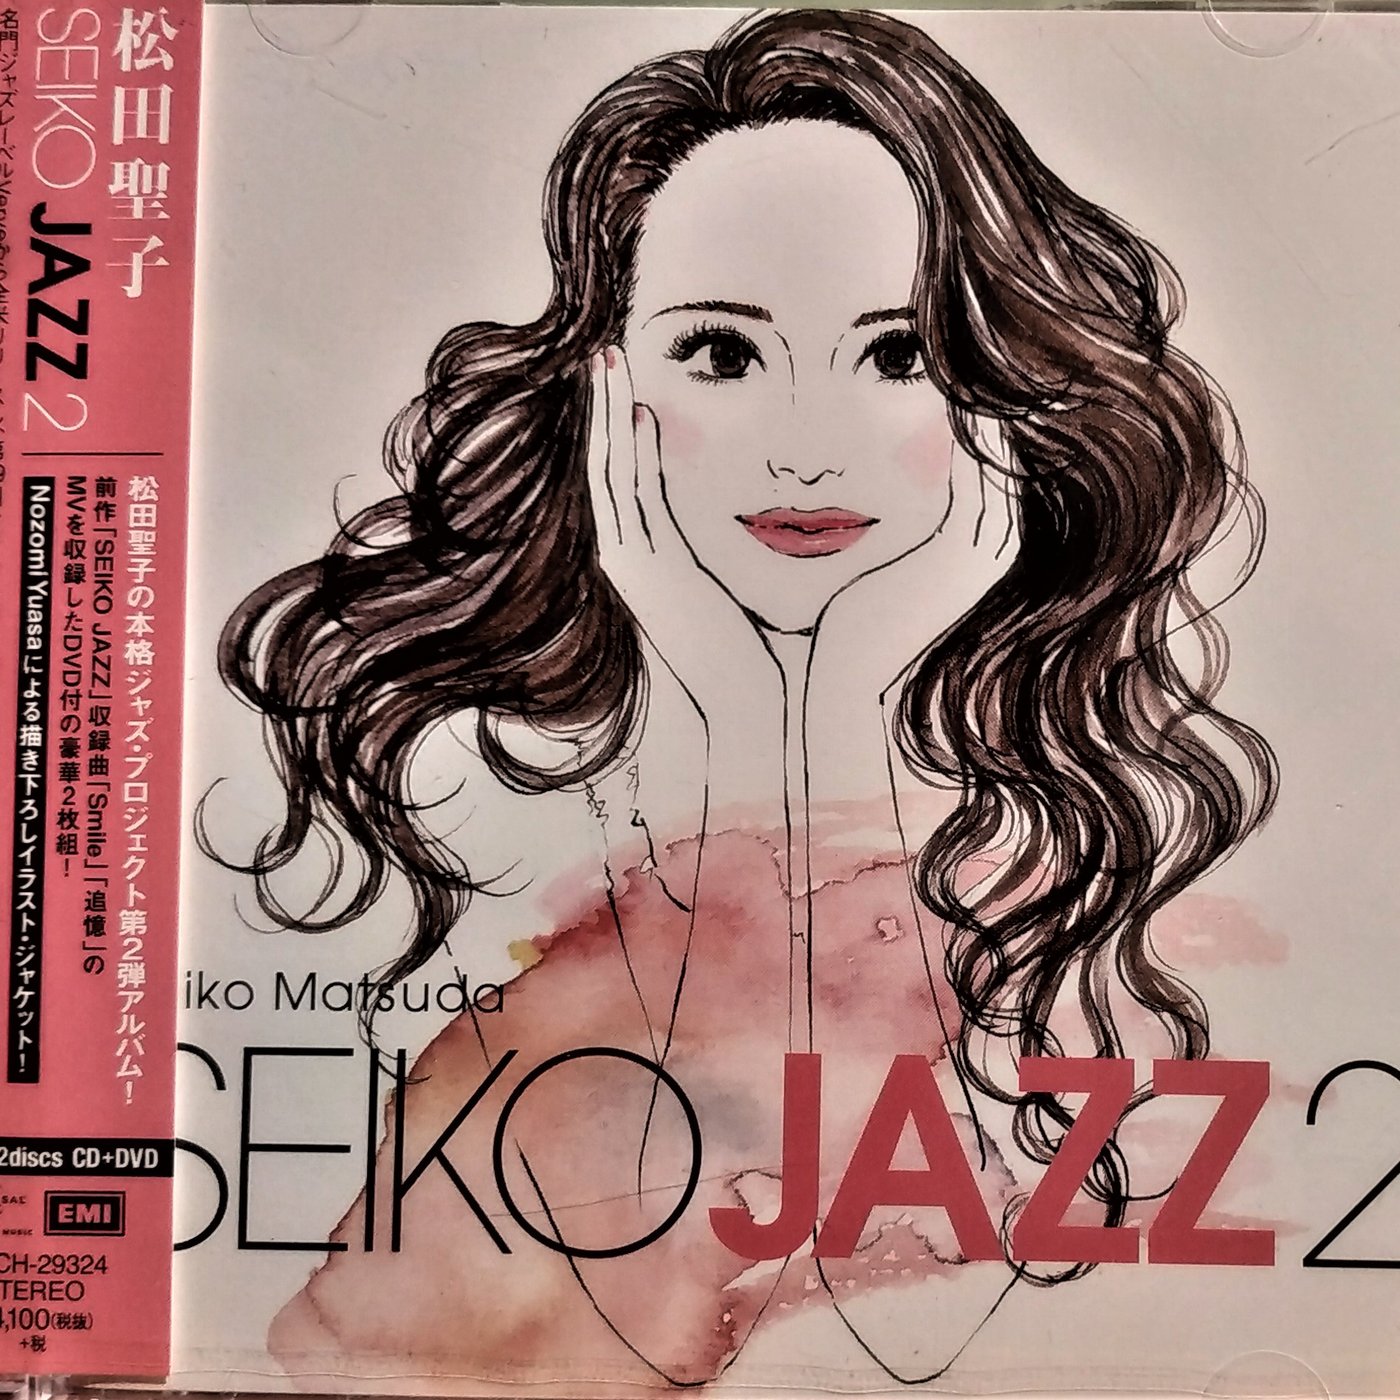 松田聖子 / Seiko Matsuda ~ SEIKO JAZZ 2 [ 初回限定排A CD+DVD 